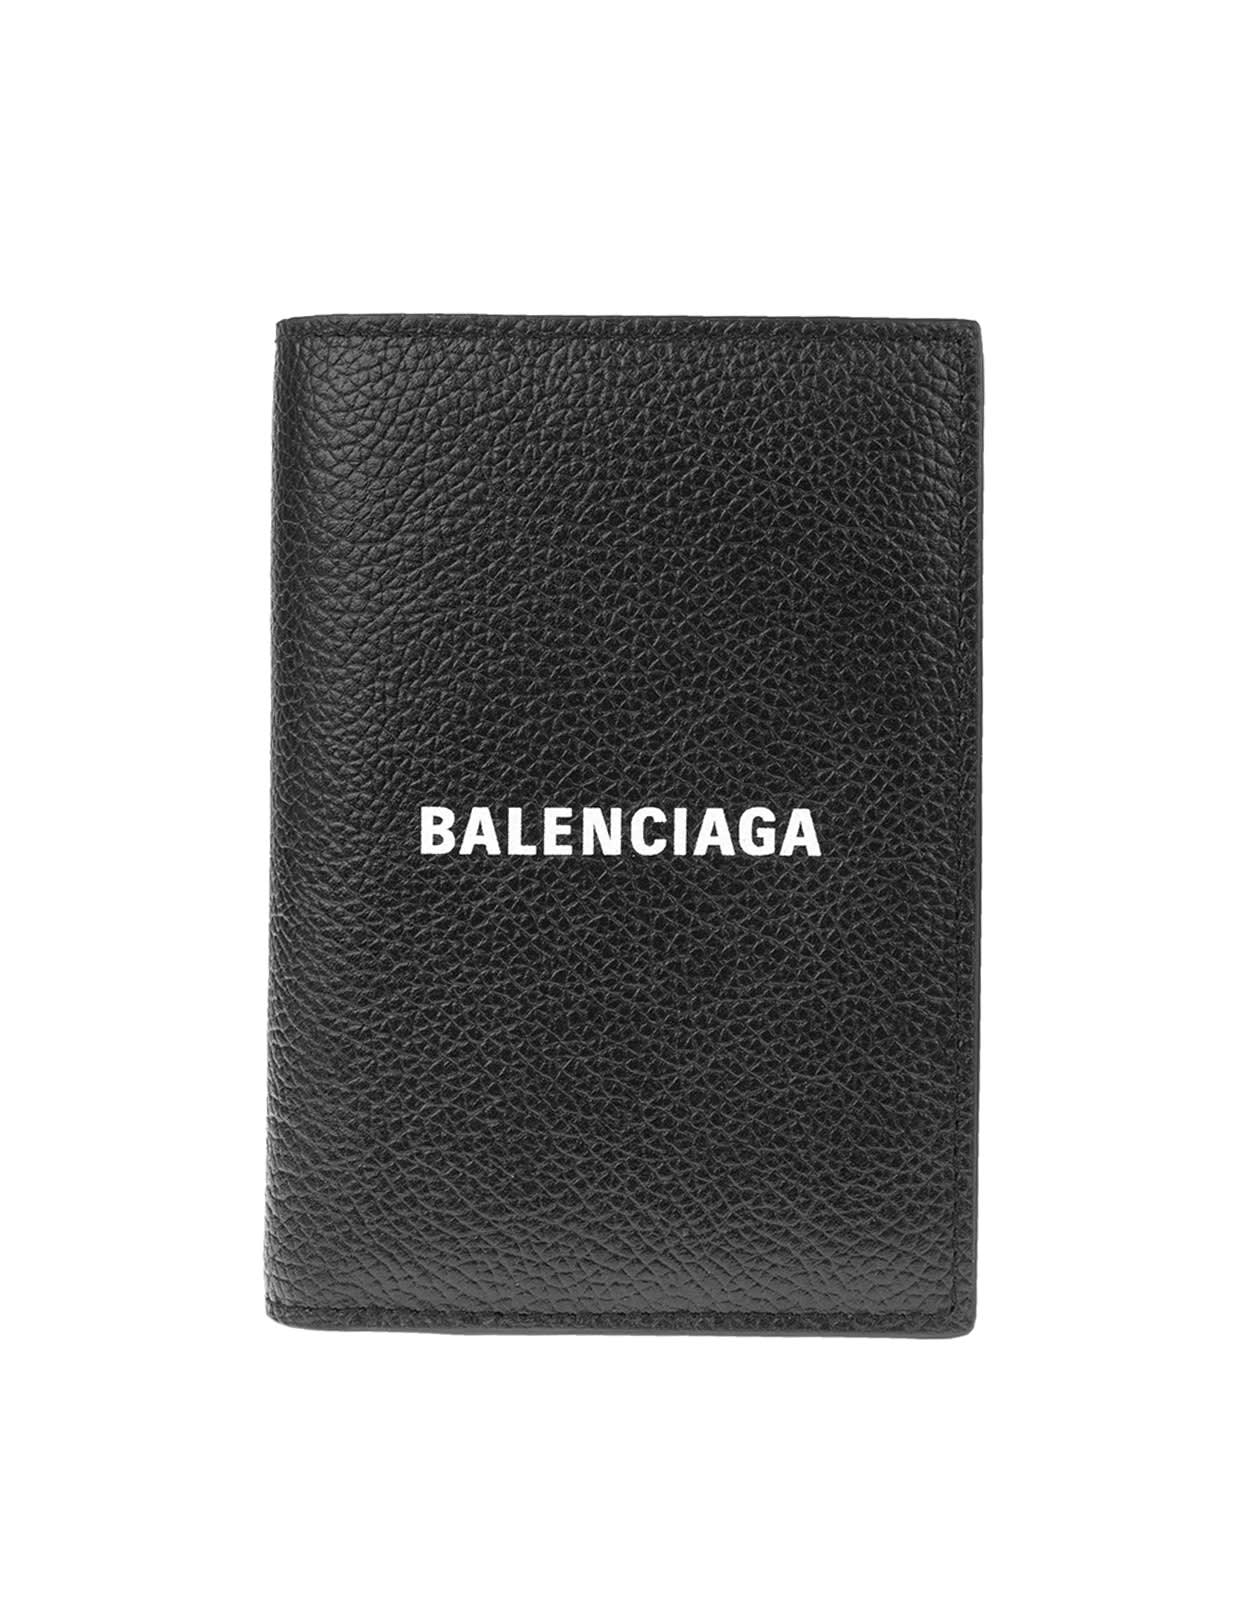 Balenciaga Man Black Cash Vertical Wallet